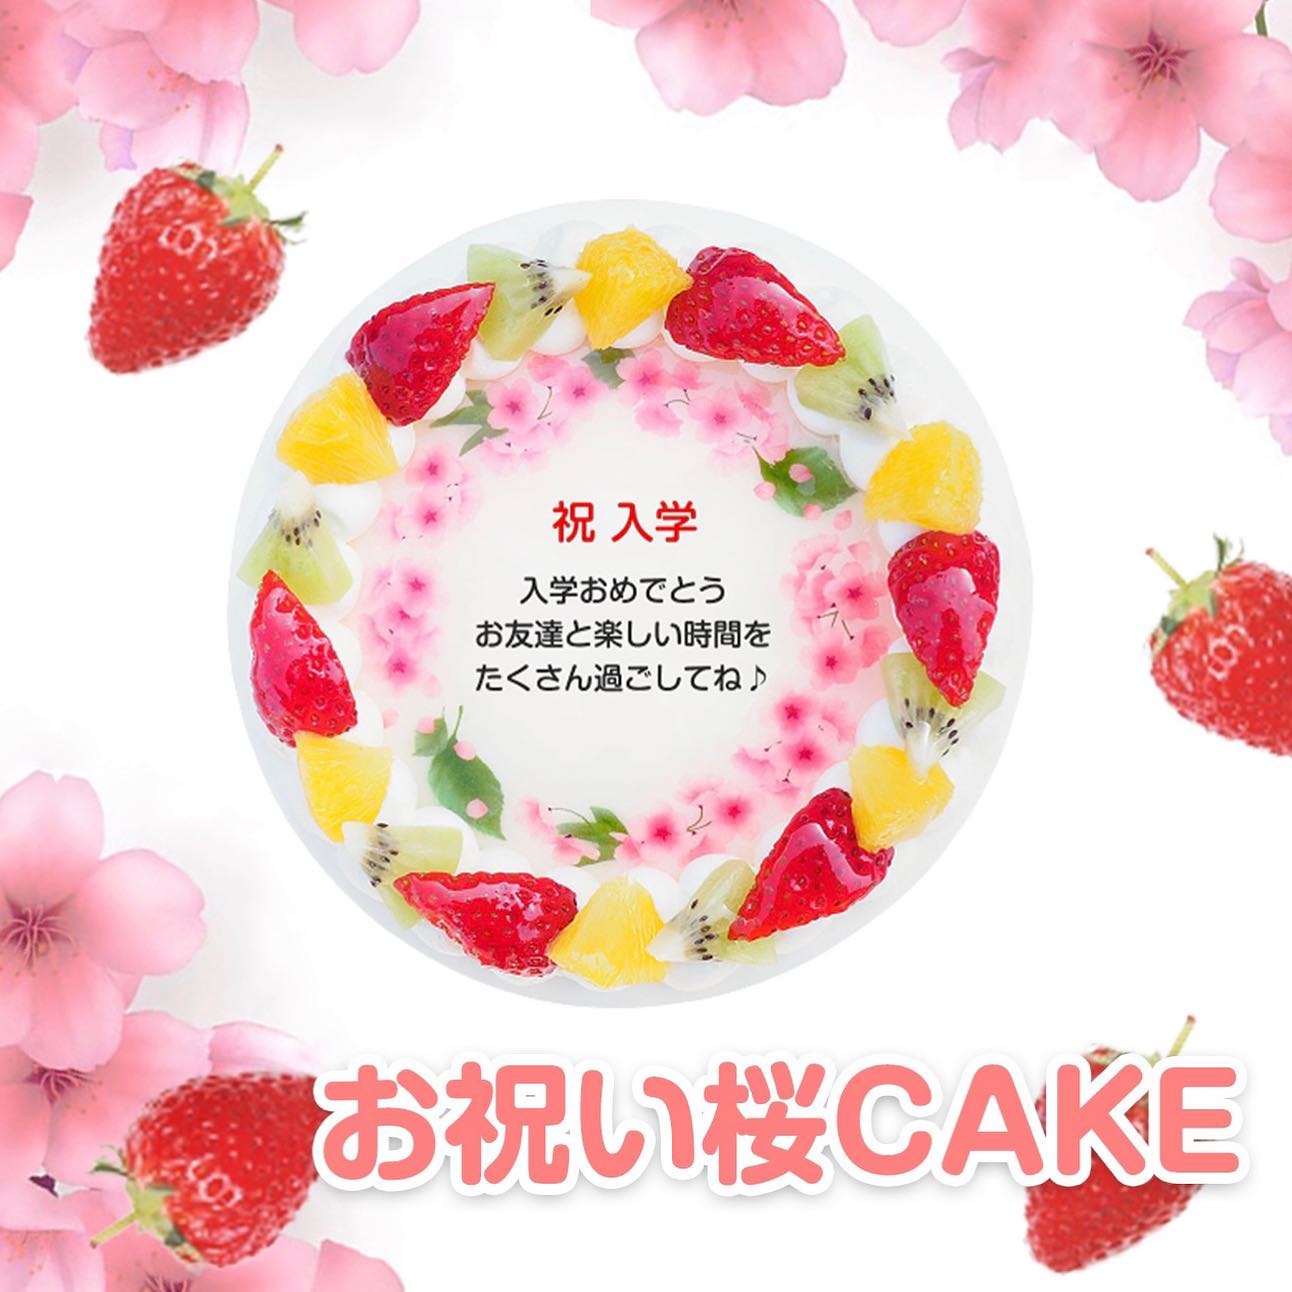 入学シーズン到来春のお祝い桜ケーキ from Instagram